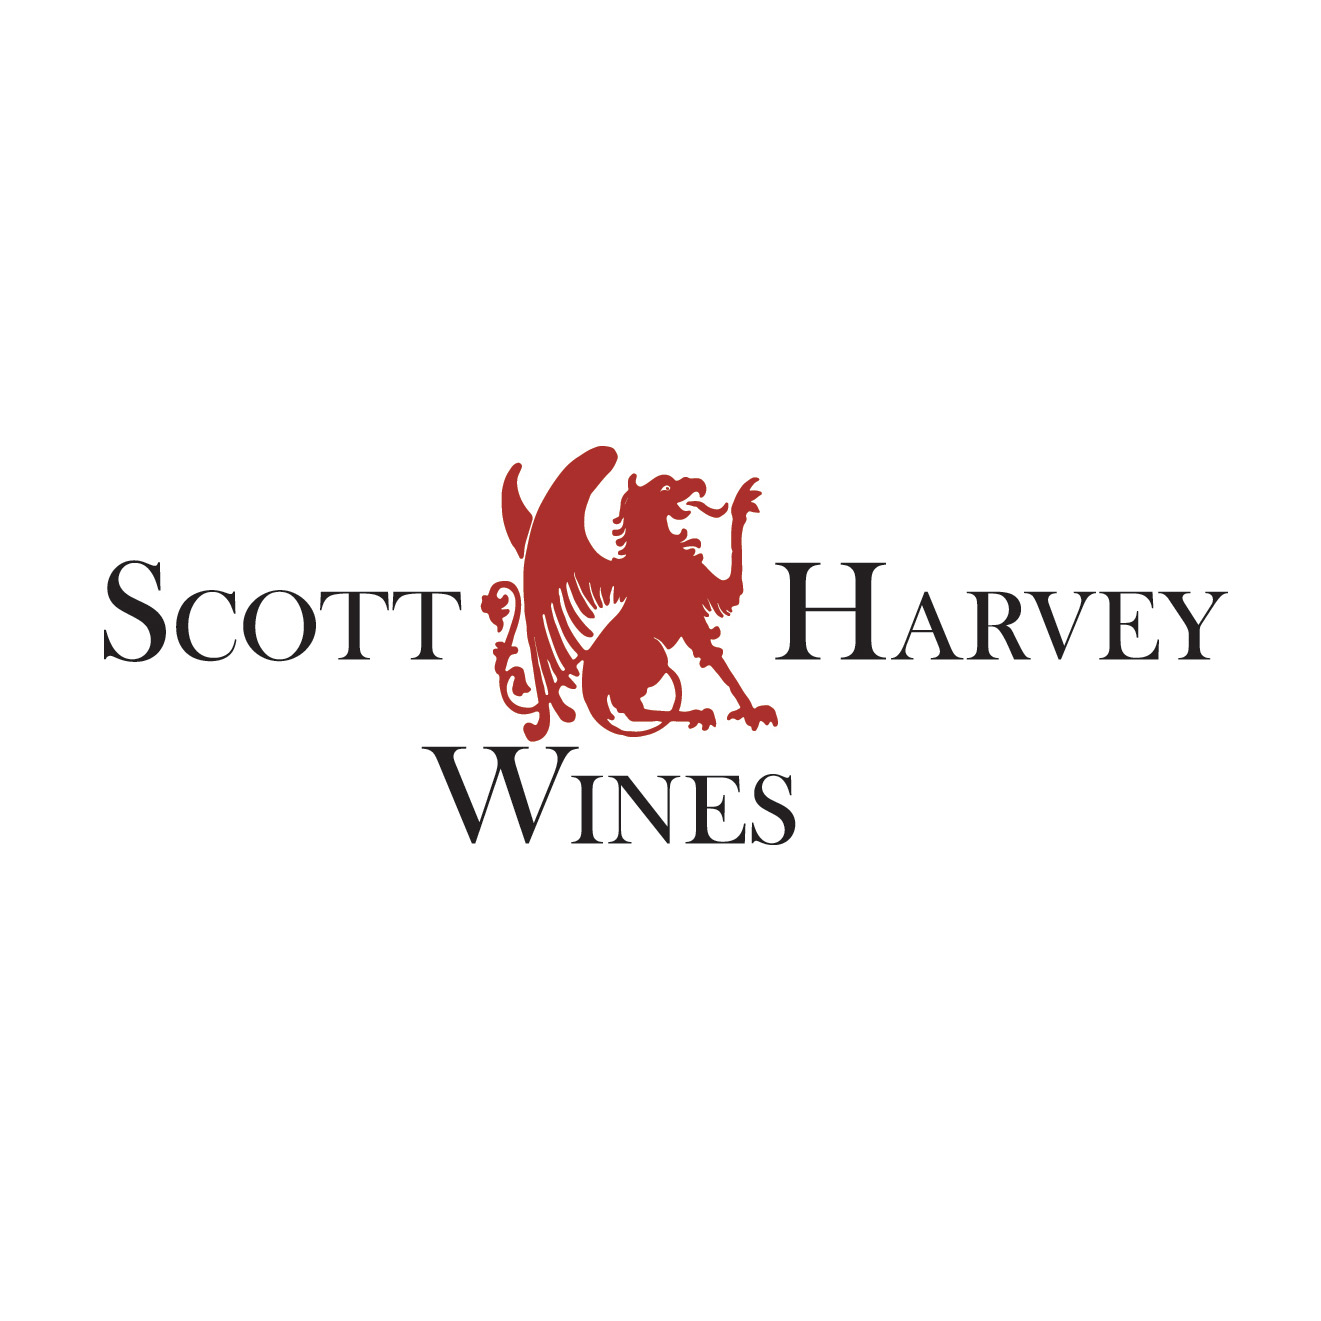 Scott Harvey Wines